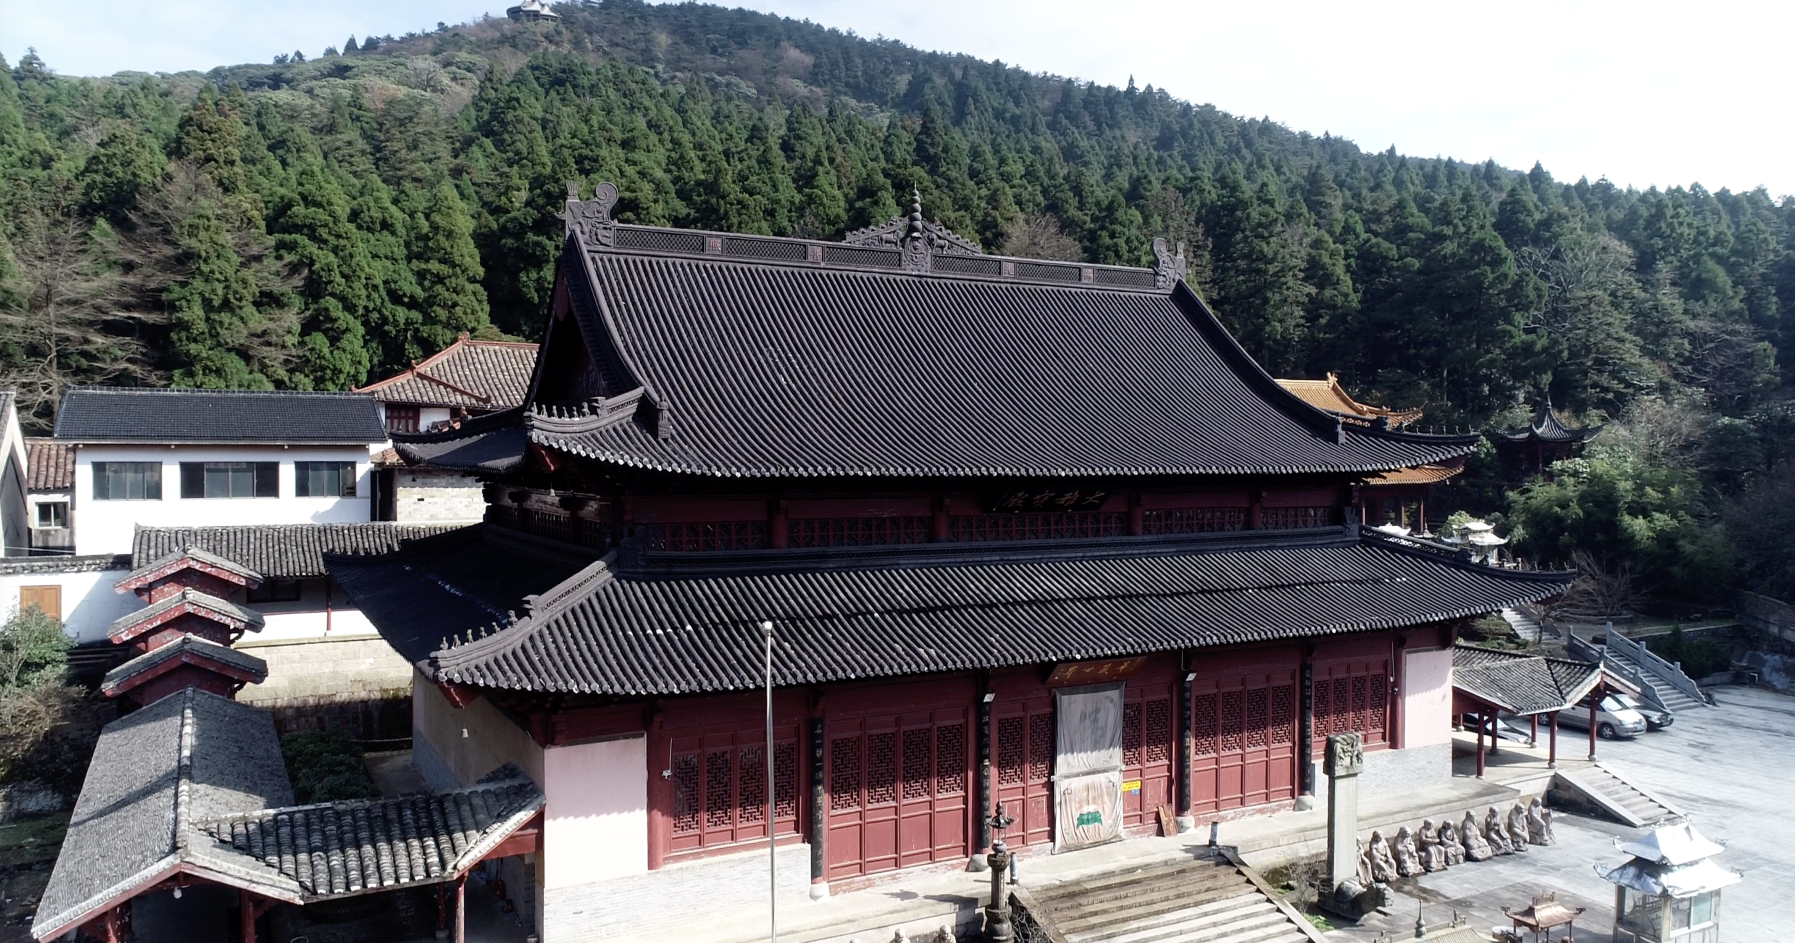 千年古刹天台山华顶寺,一个让人心静,充满神秘色彩的地方